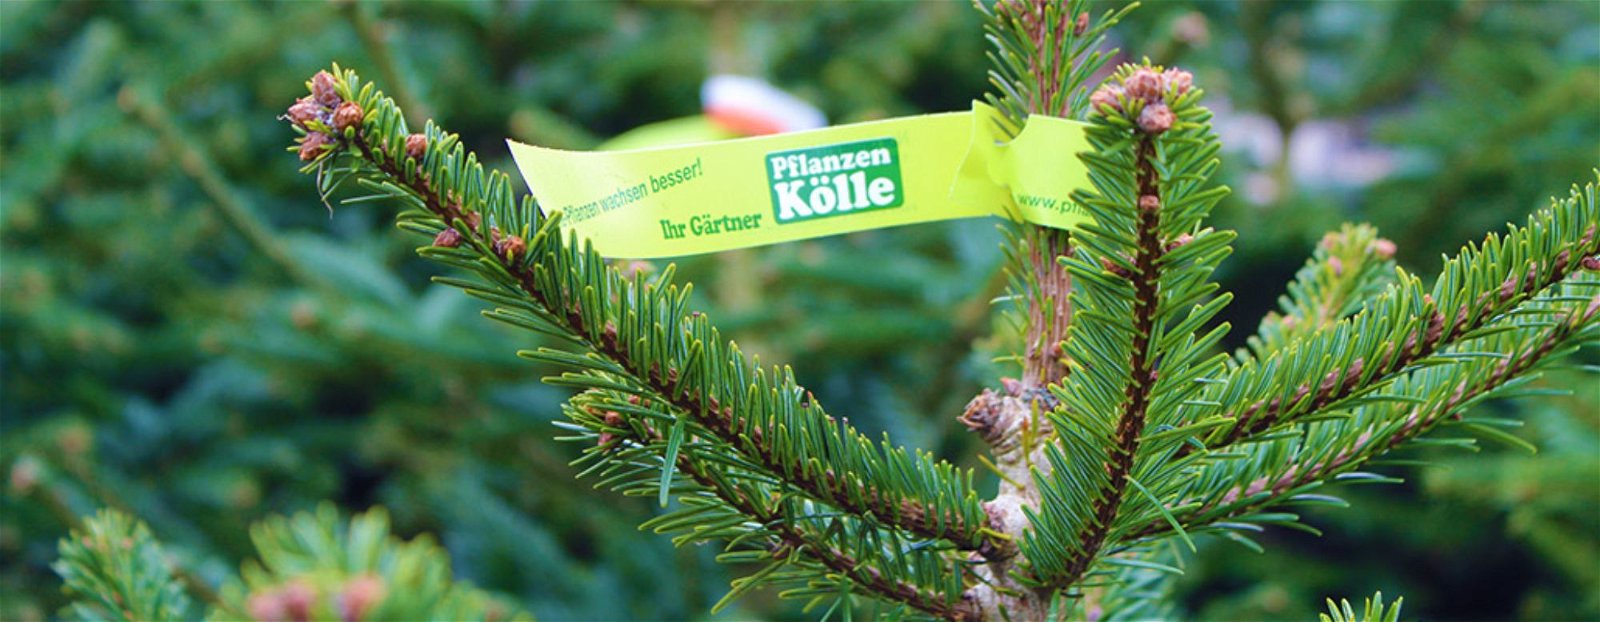 Pflanzen-Kölle Weihnachtsbaumverkauf